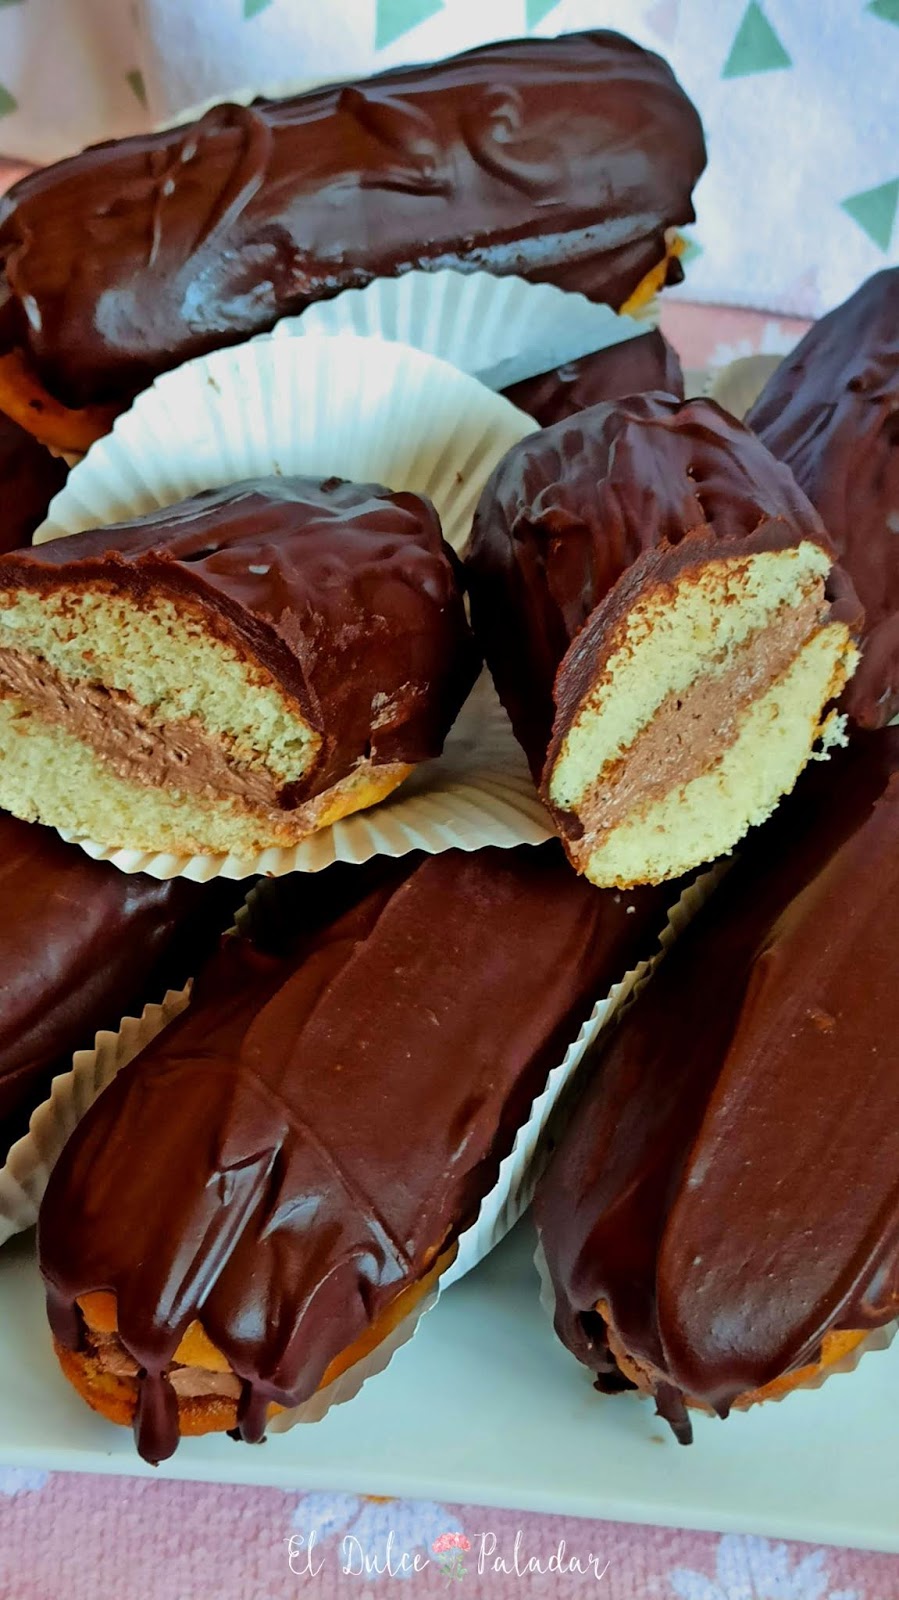 Pastelitos de trufa y chocolate sin horno #debalcónabalcón - El dulce  paladar